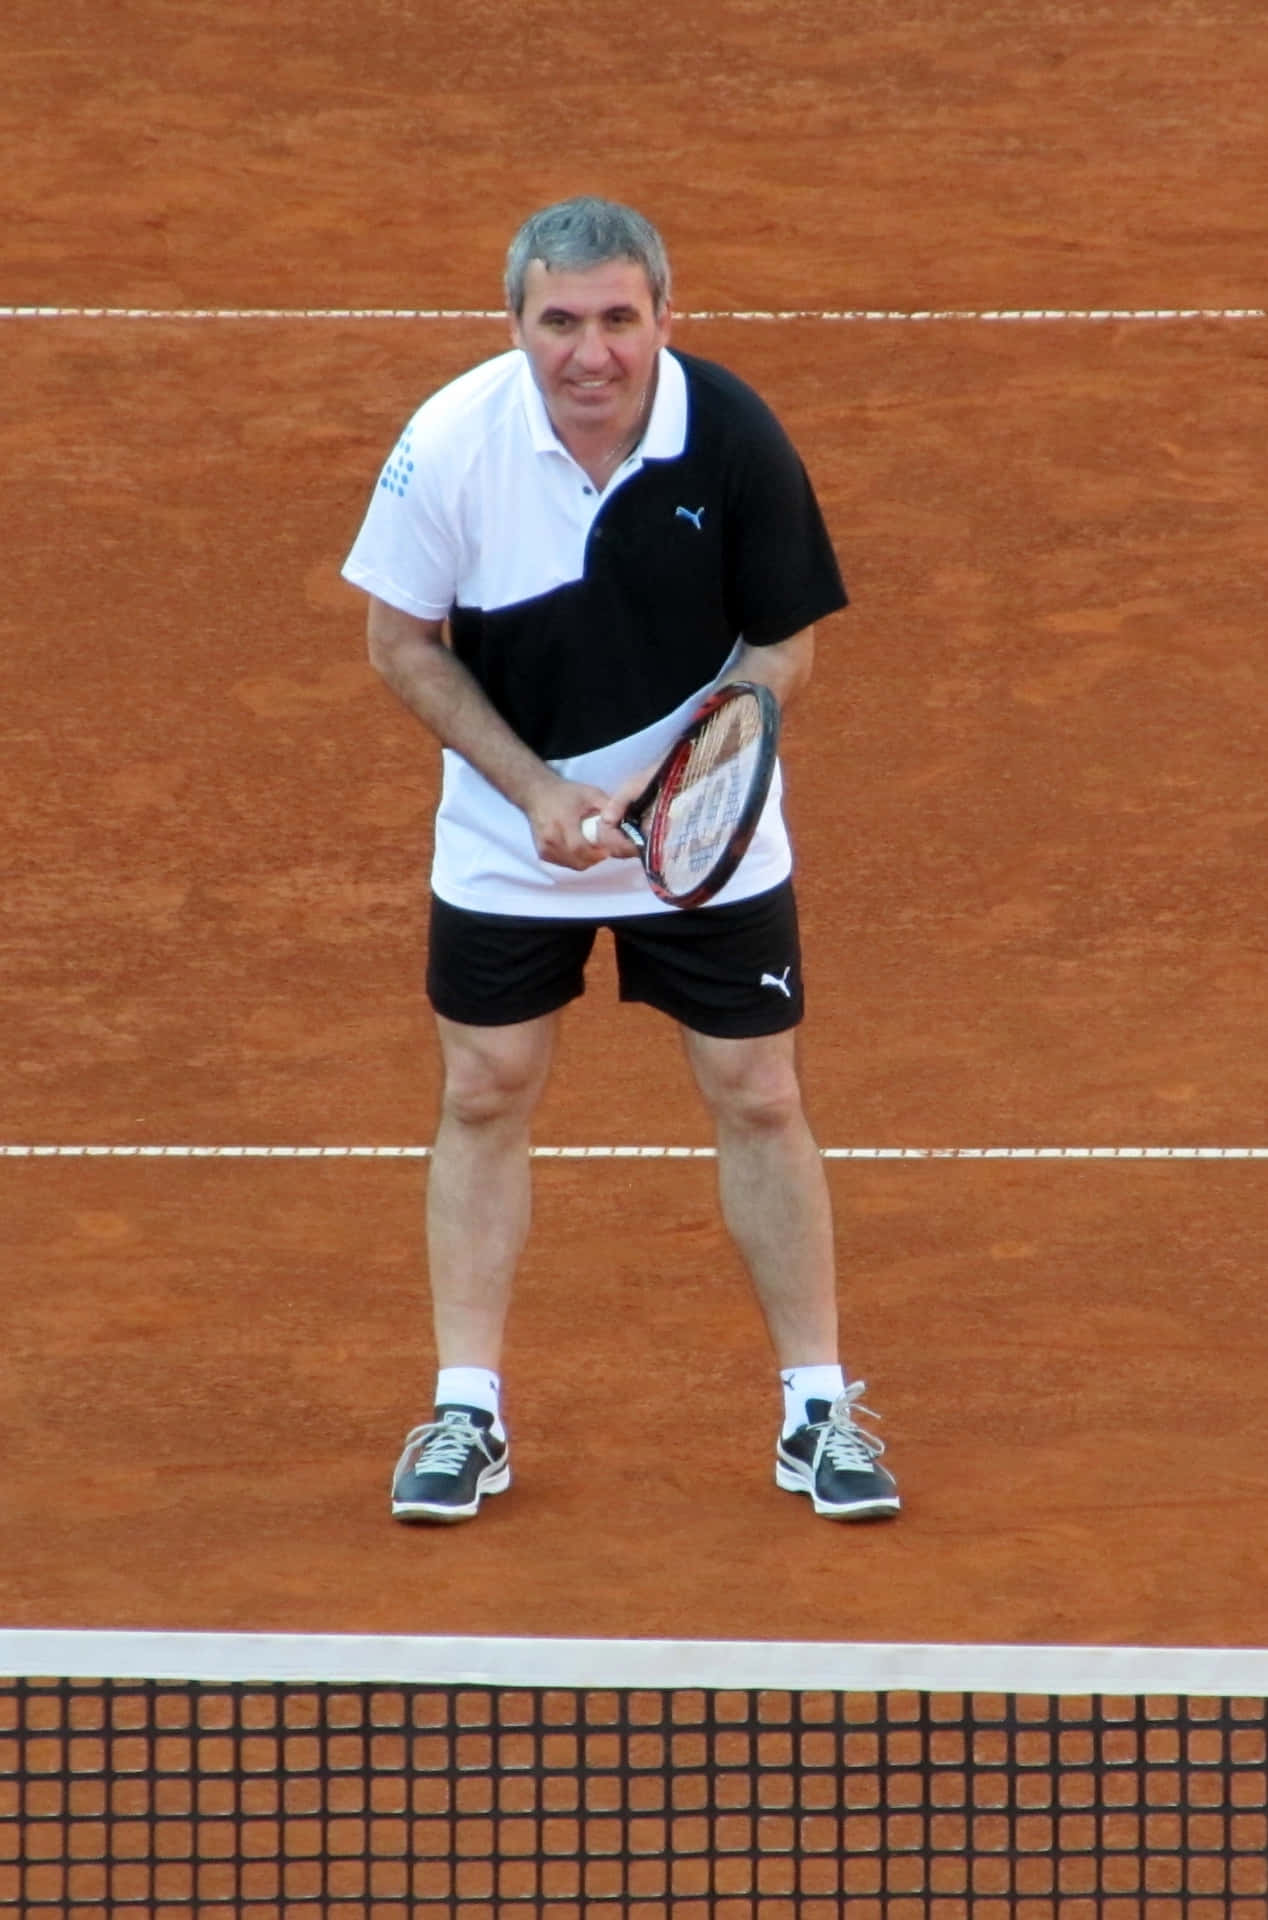 Gheorghe Hagi spiller tennis - Billede tapet Wallpaper